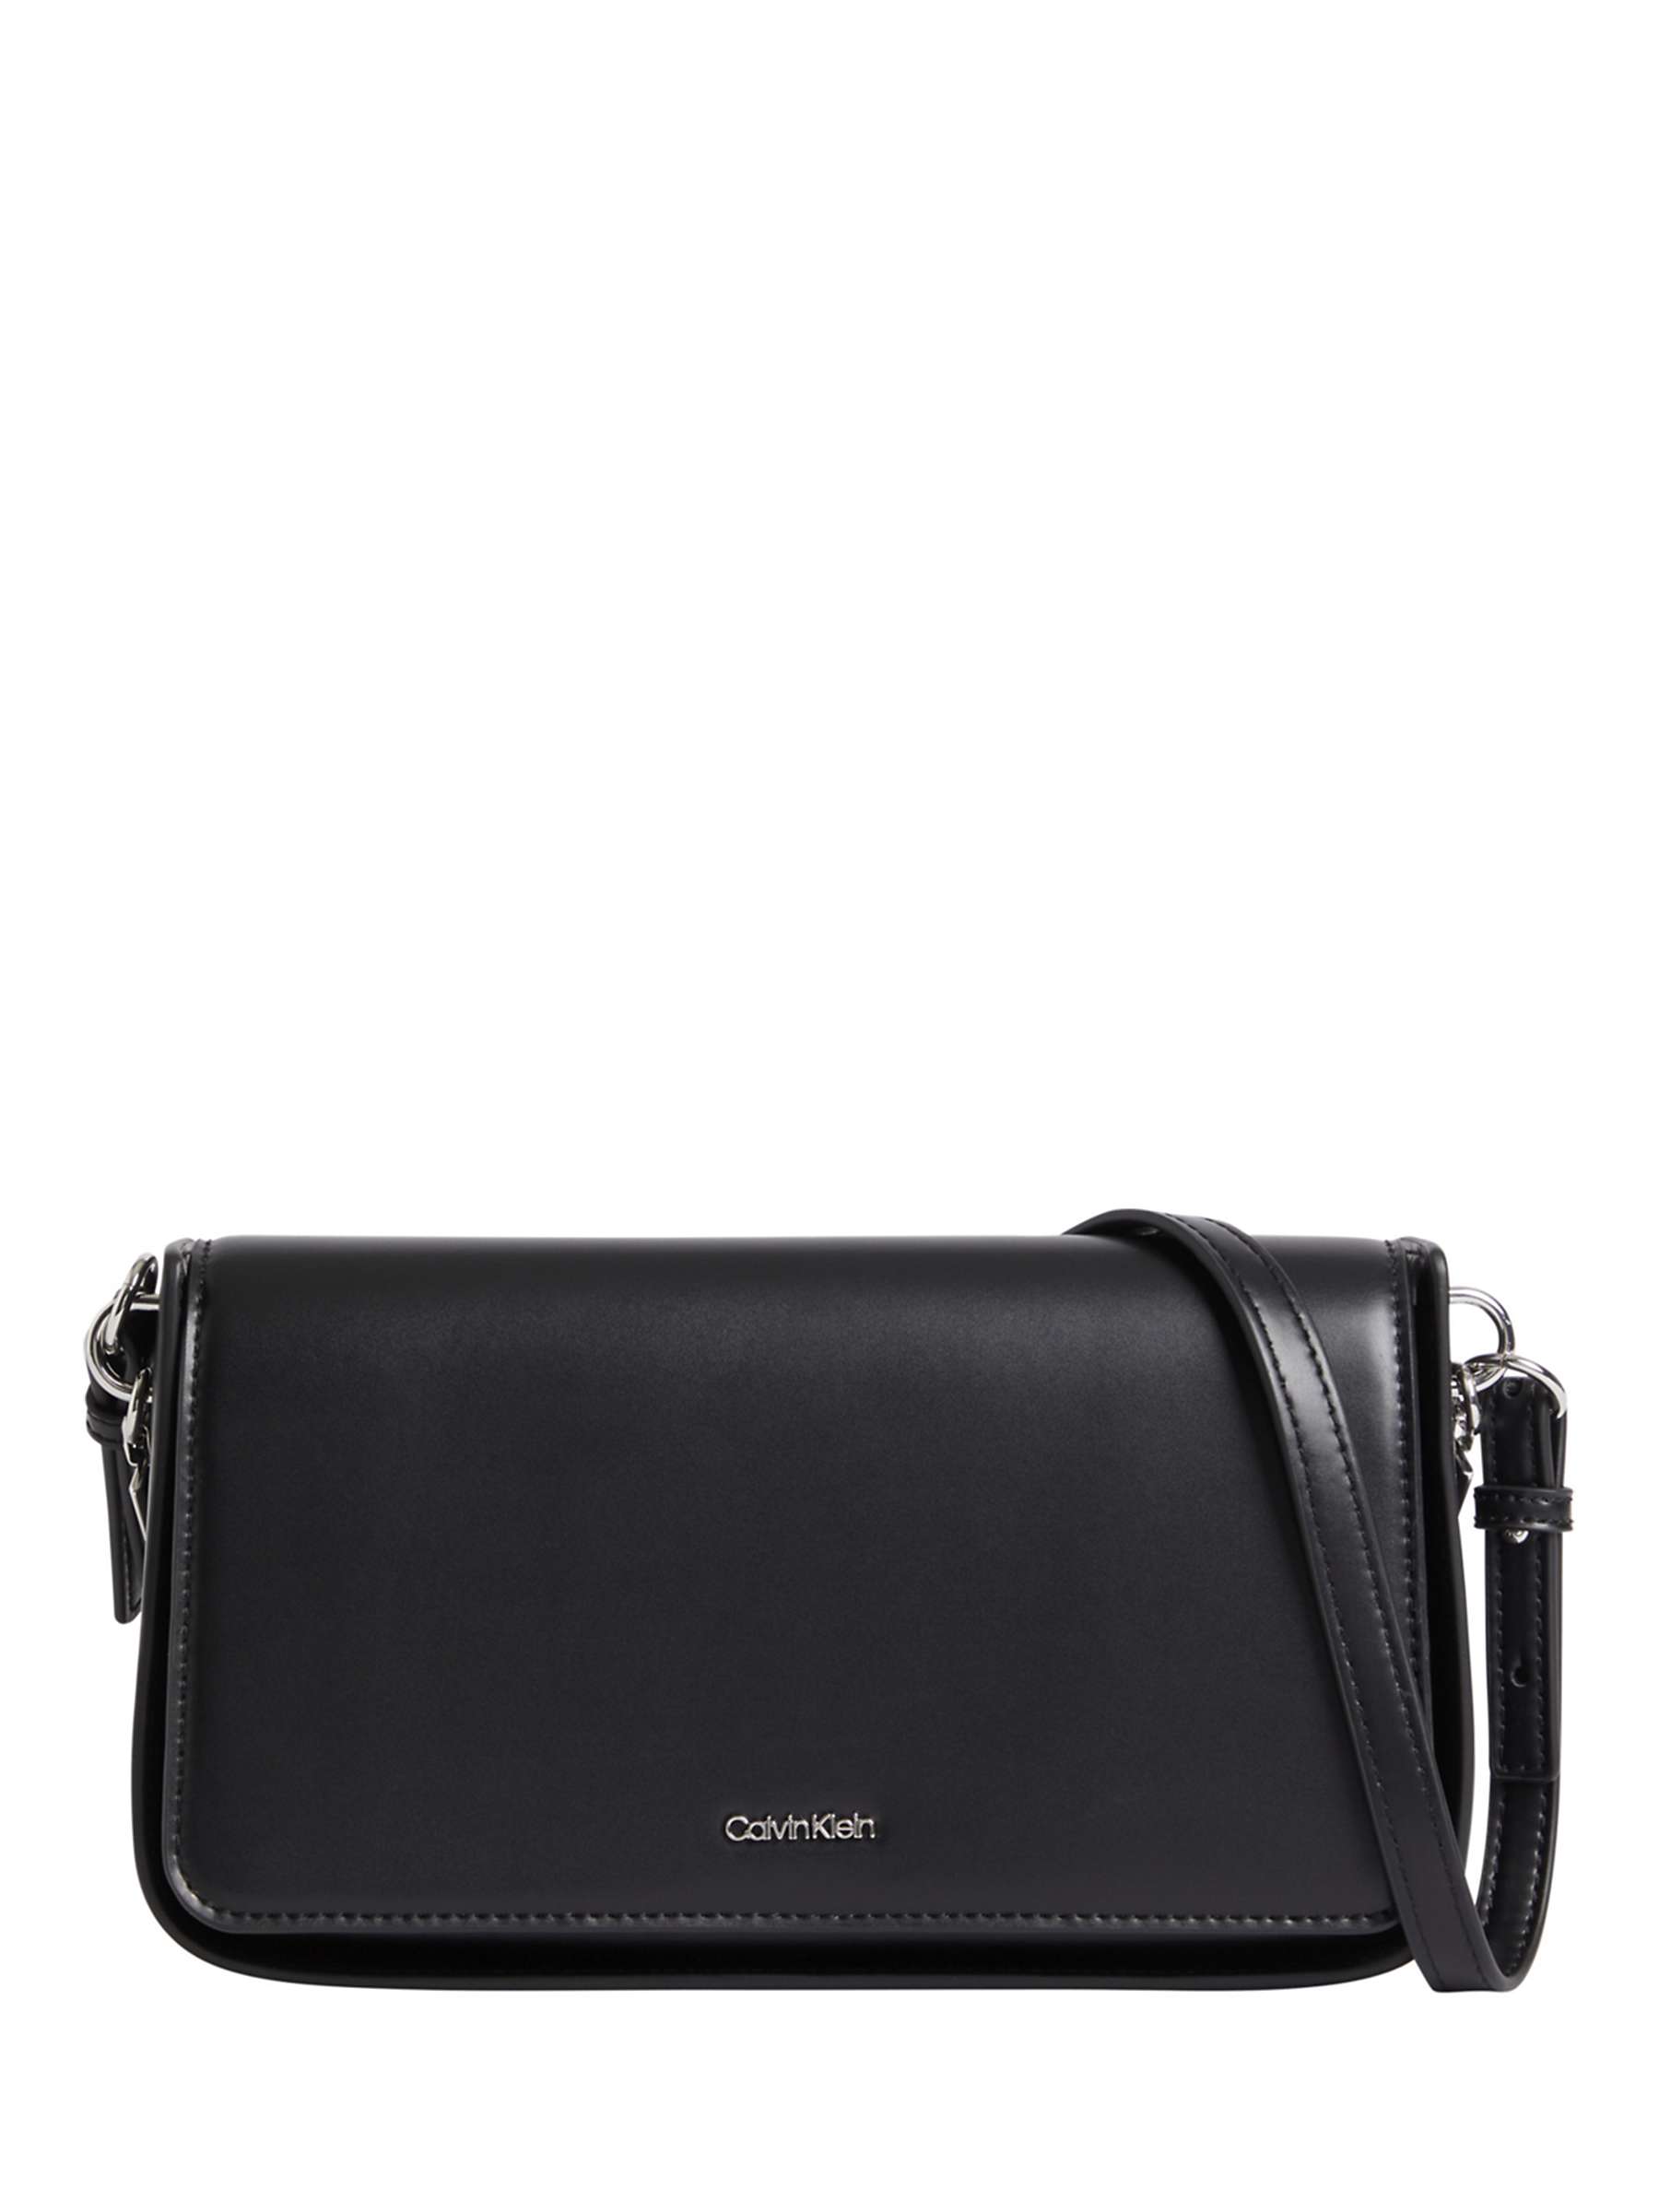 Buy Calvin Klein Archival Chain Strap Shoulder Bag, Black Online at johnlewis.com